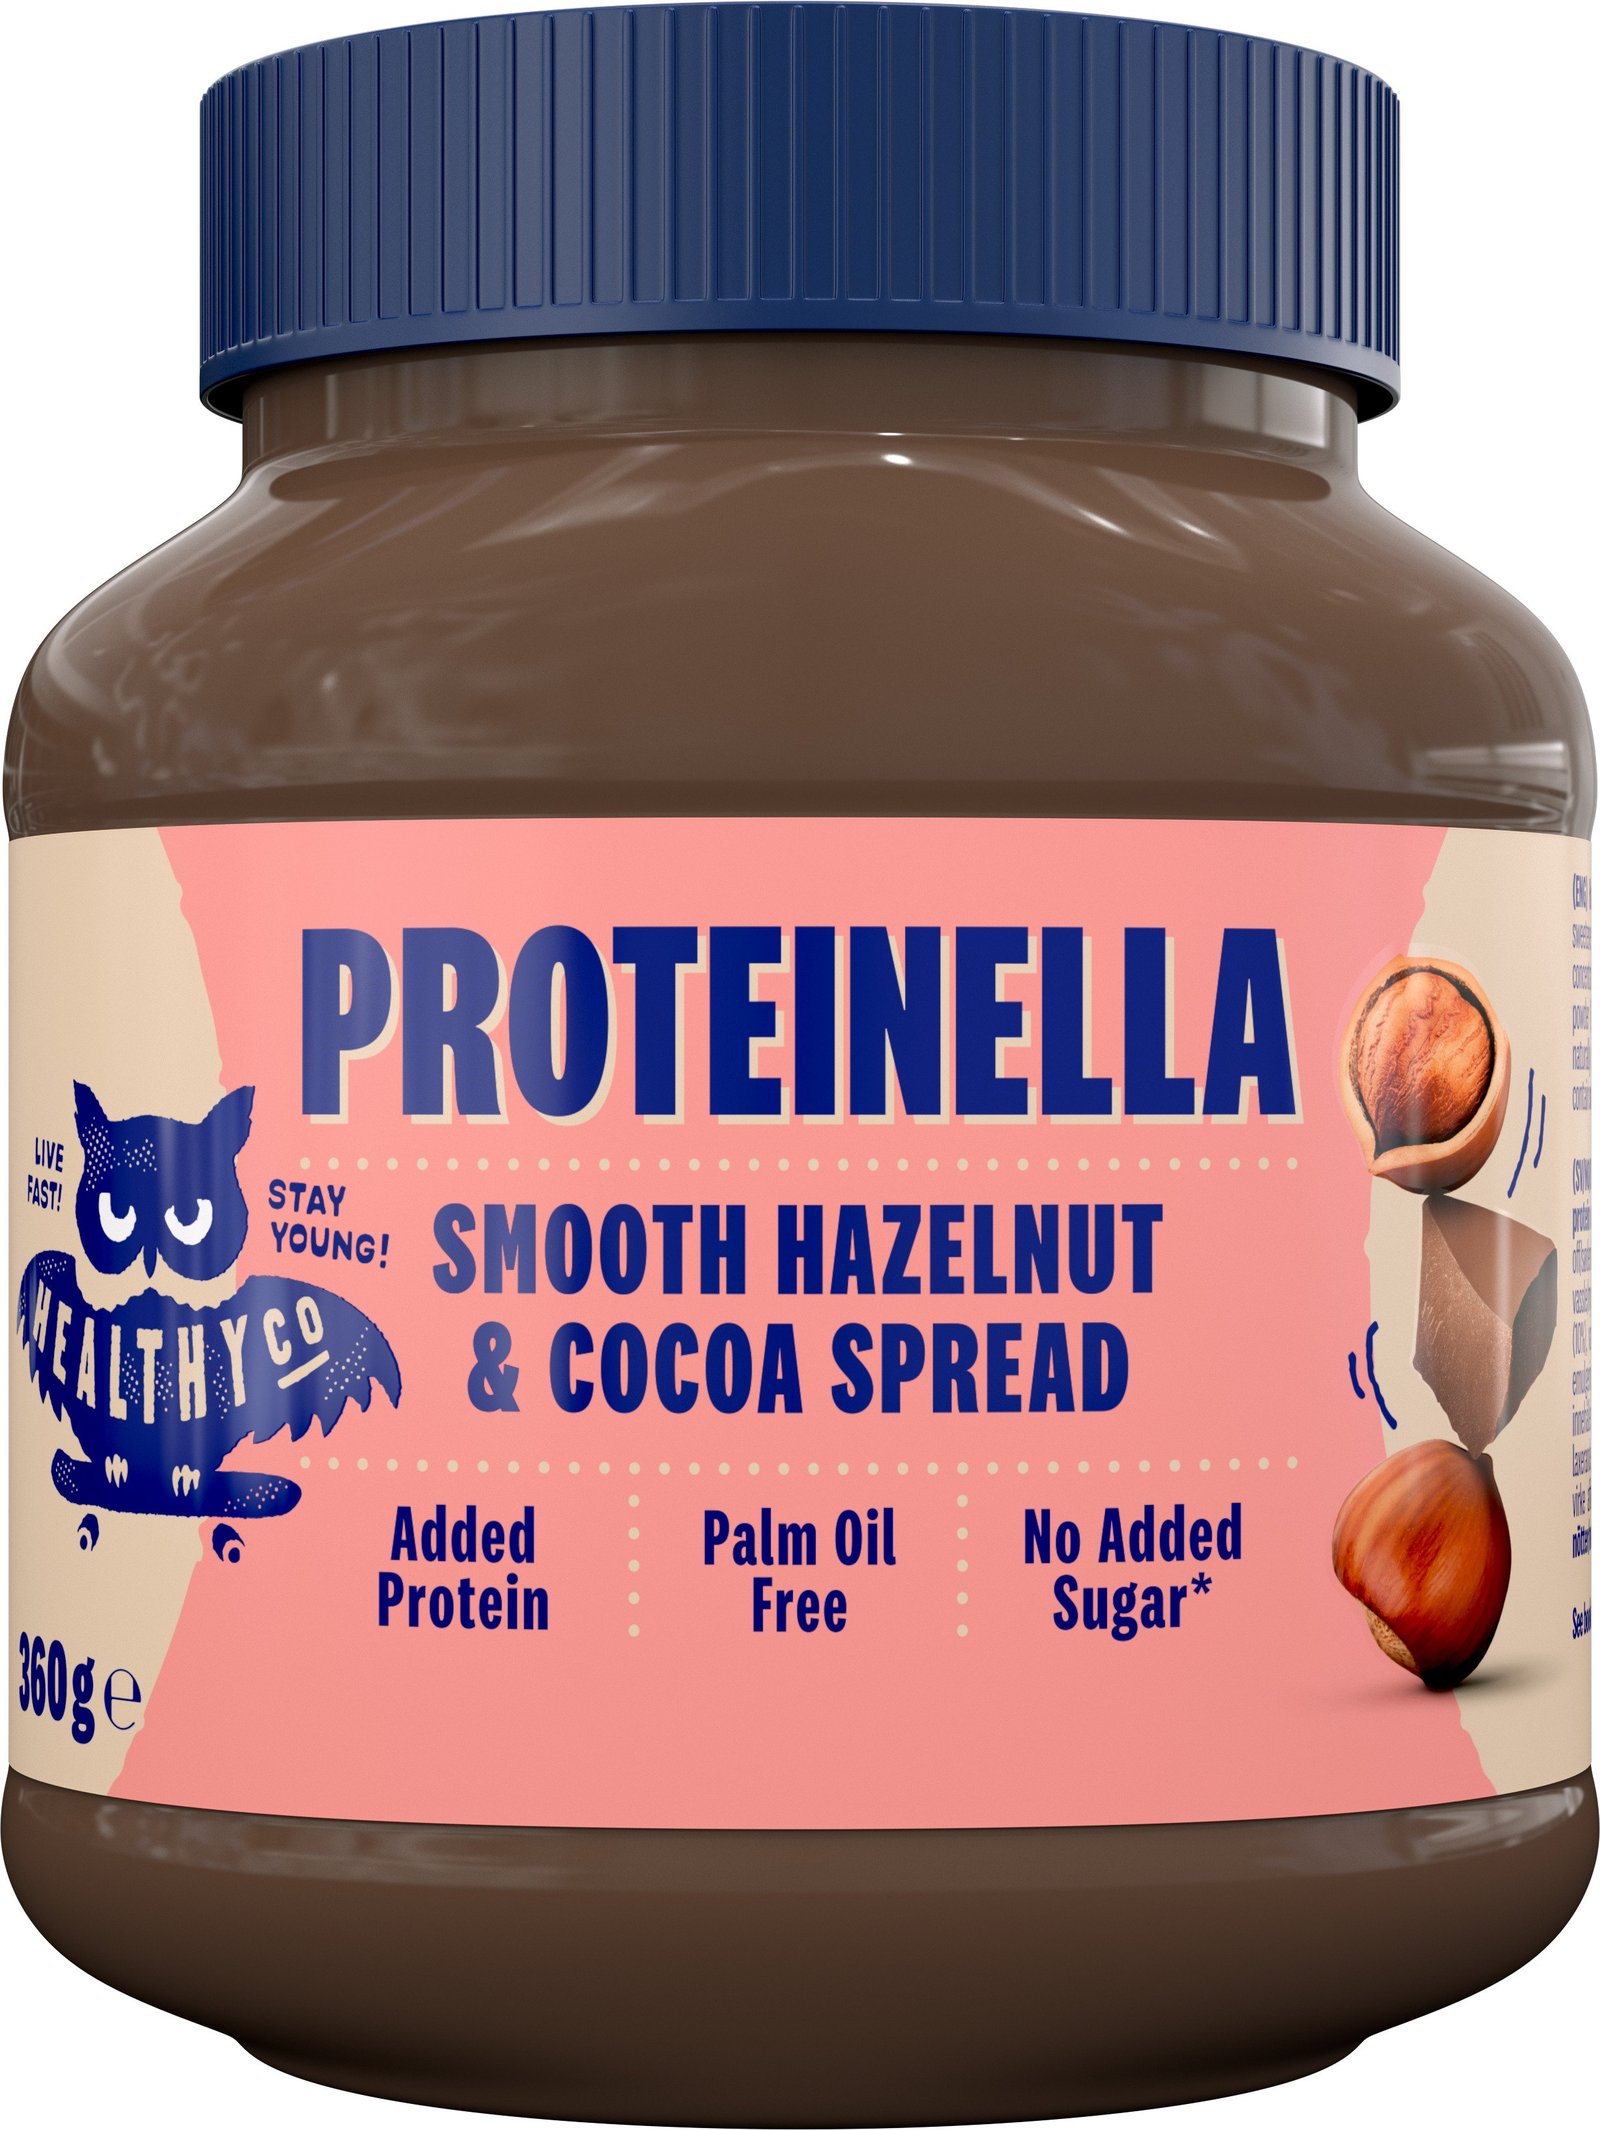 HealthyCo Proteinella Smooth Hazelnut & Cocoa Spread 360g